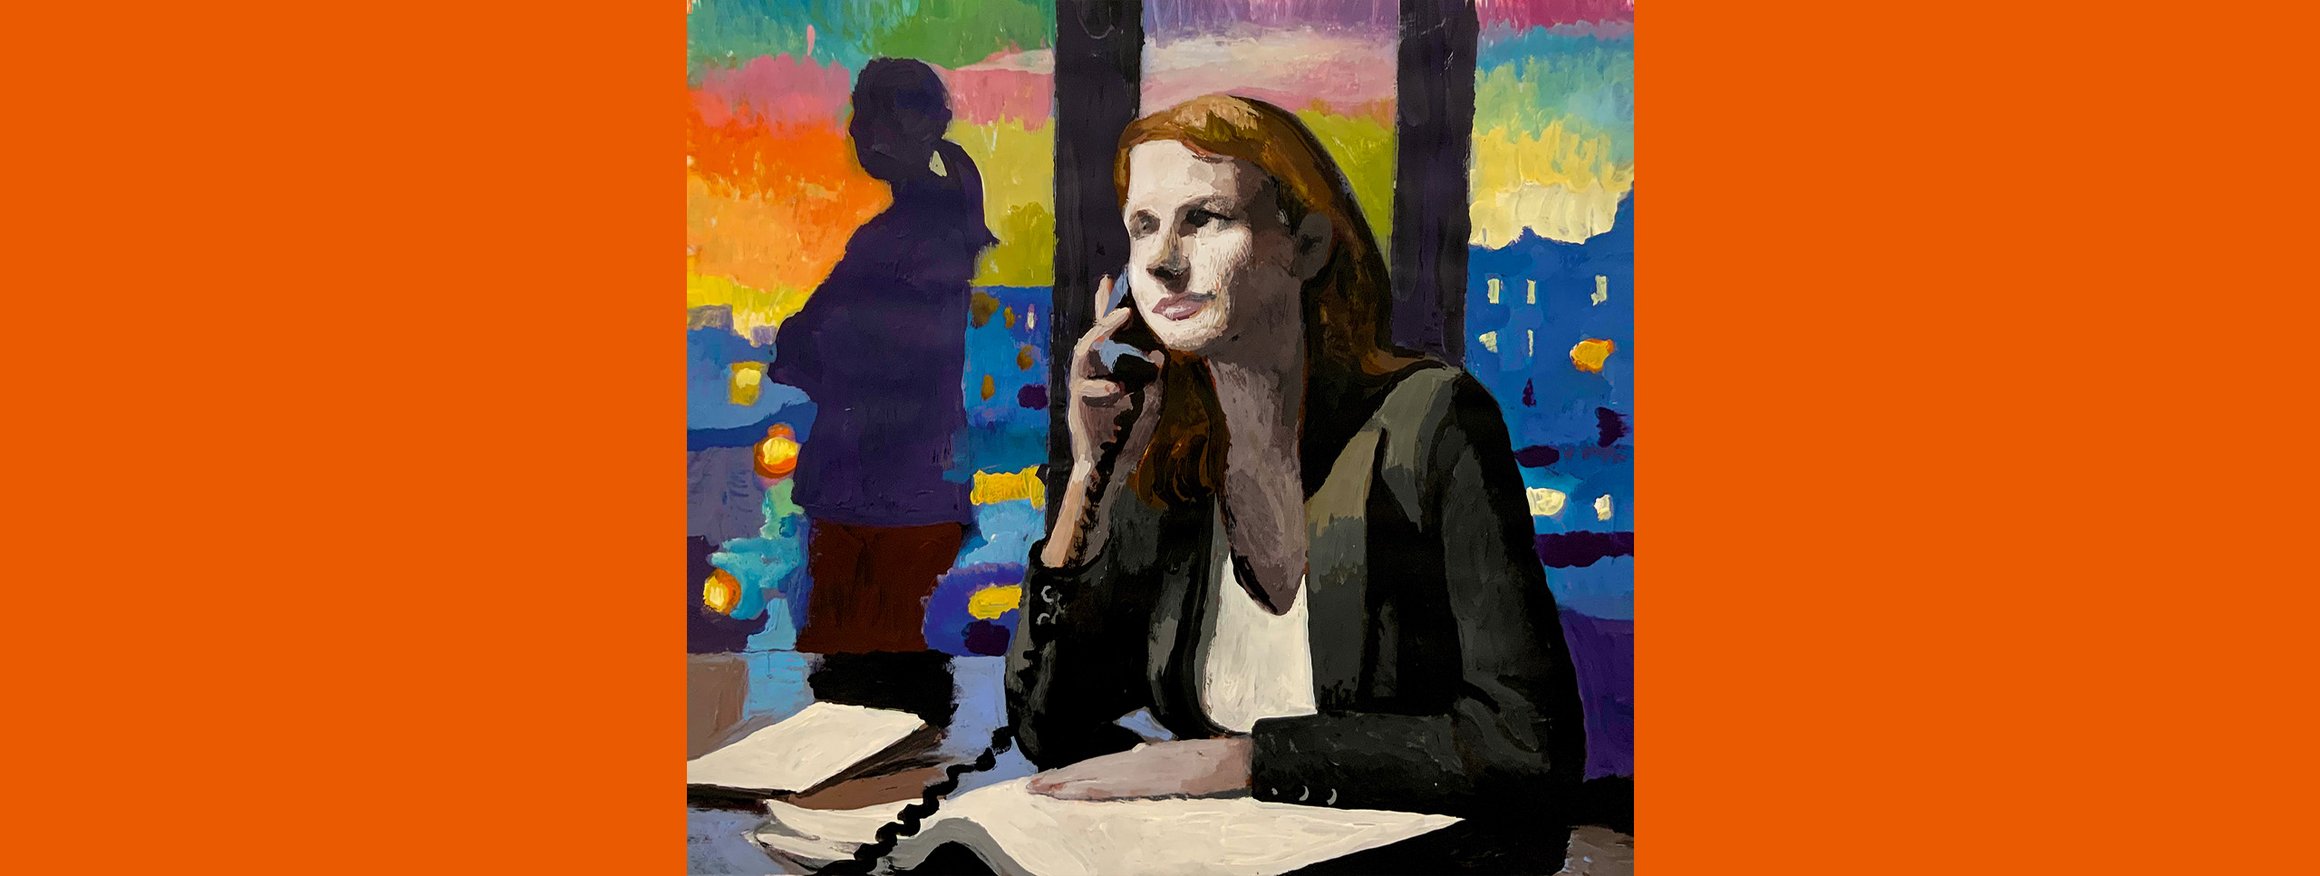 Die Illustration von Andrea Ventura zeigt eine Frau an einem Tisch, die telefoniert, während dahinter am Fenster eine andere Frau steht